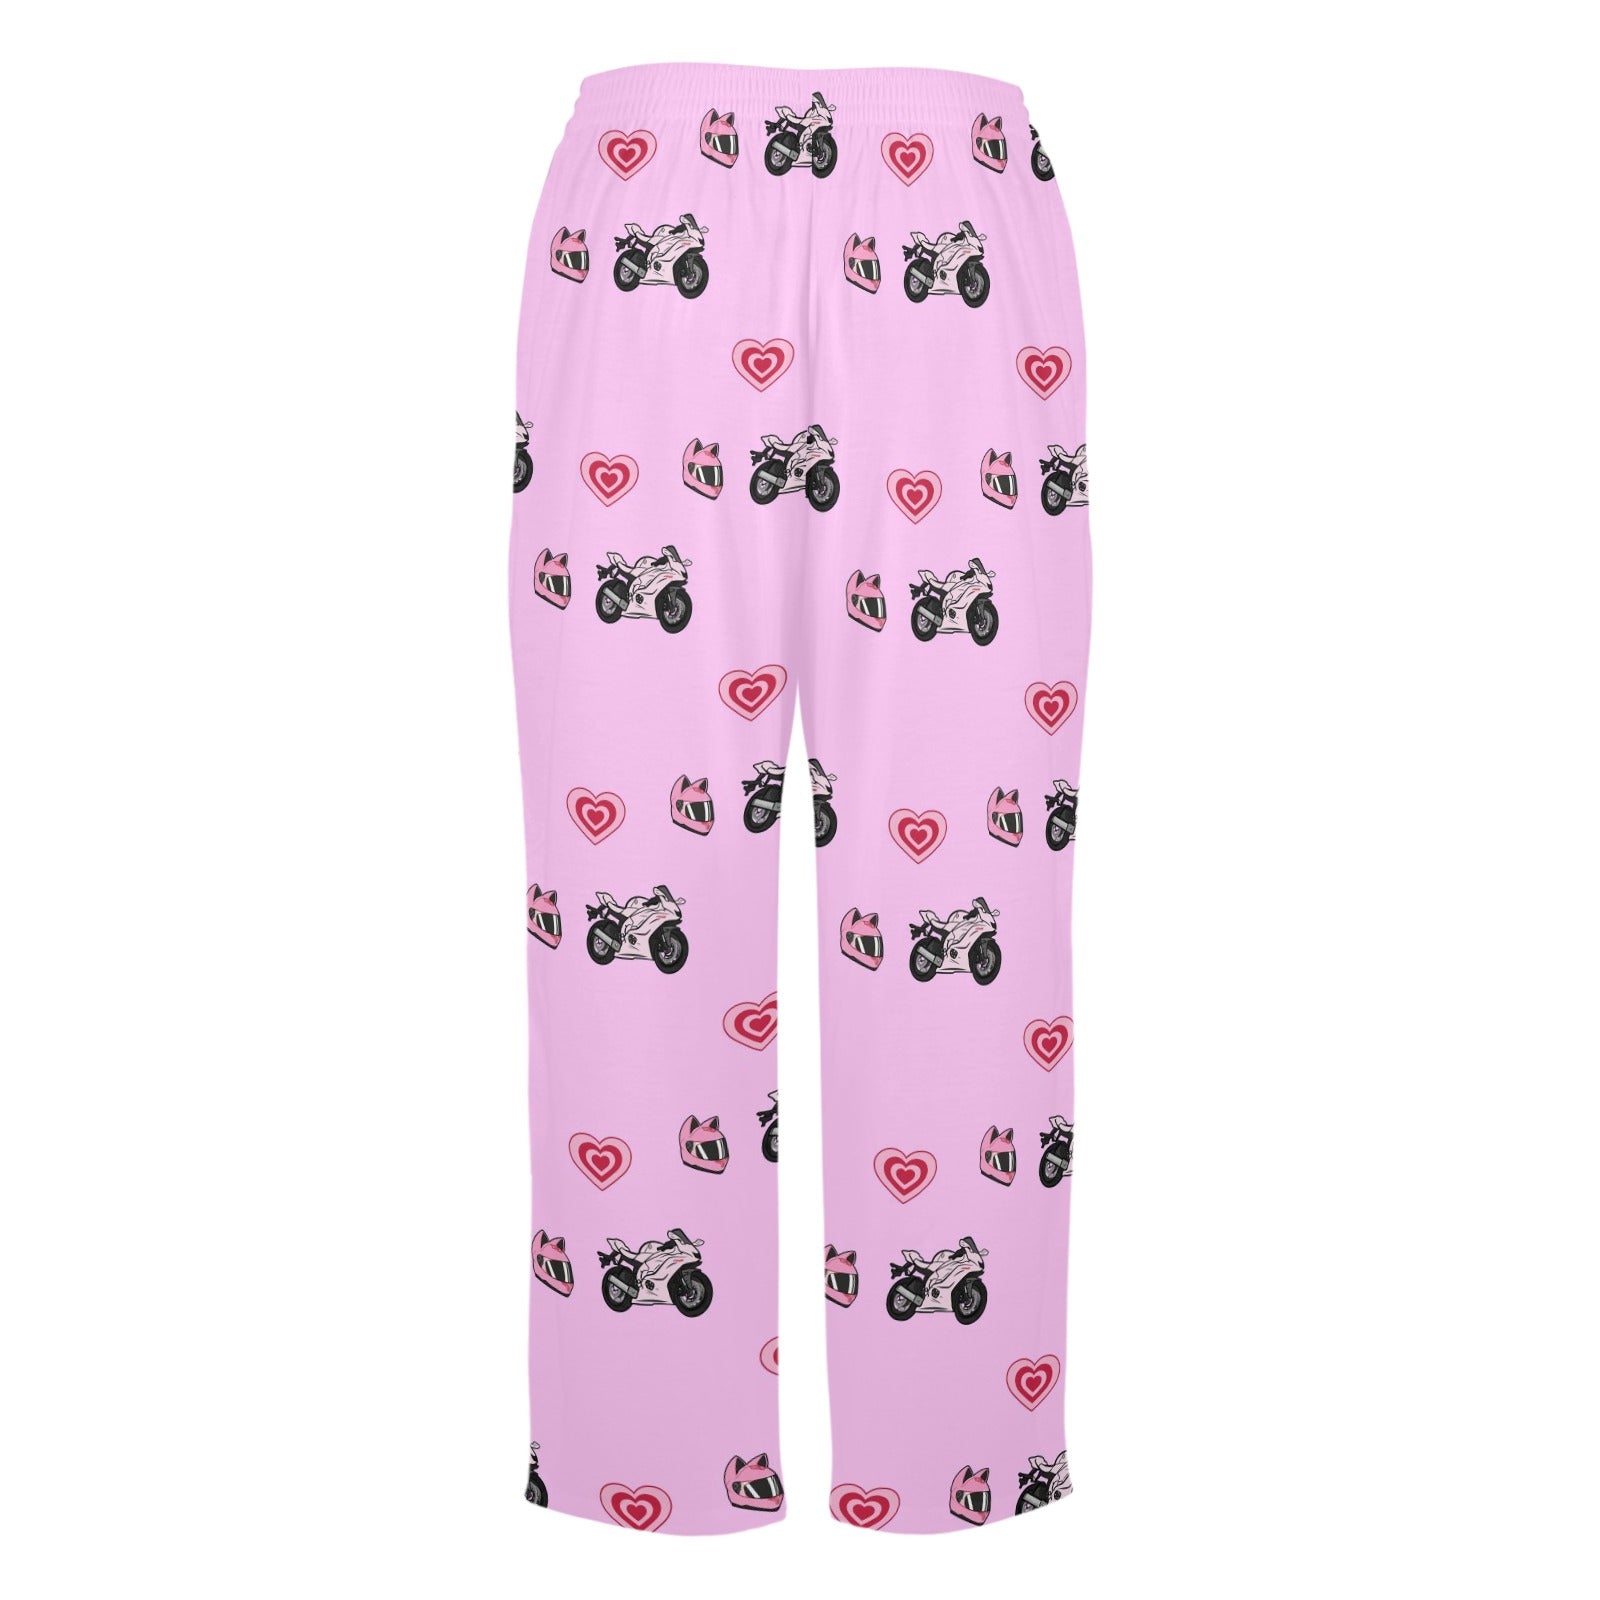 Yamaha R6 Pink Pajama Pants - 0